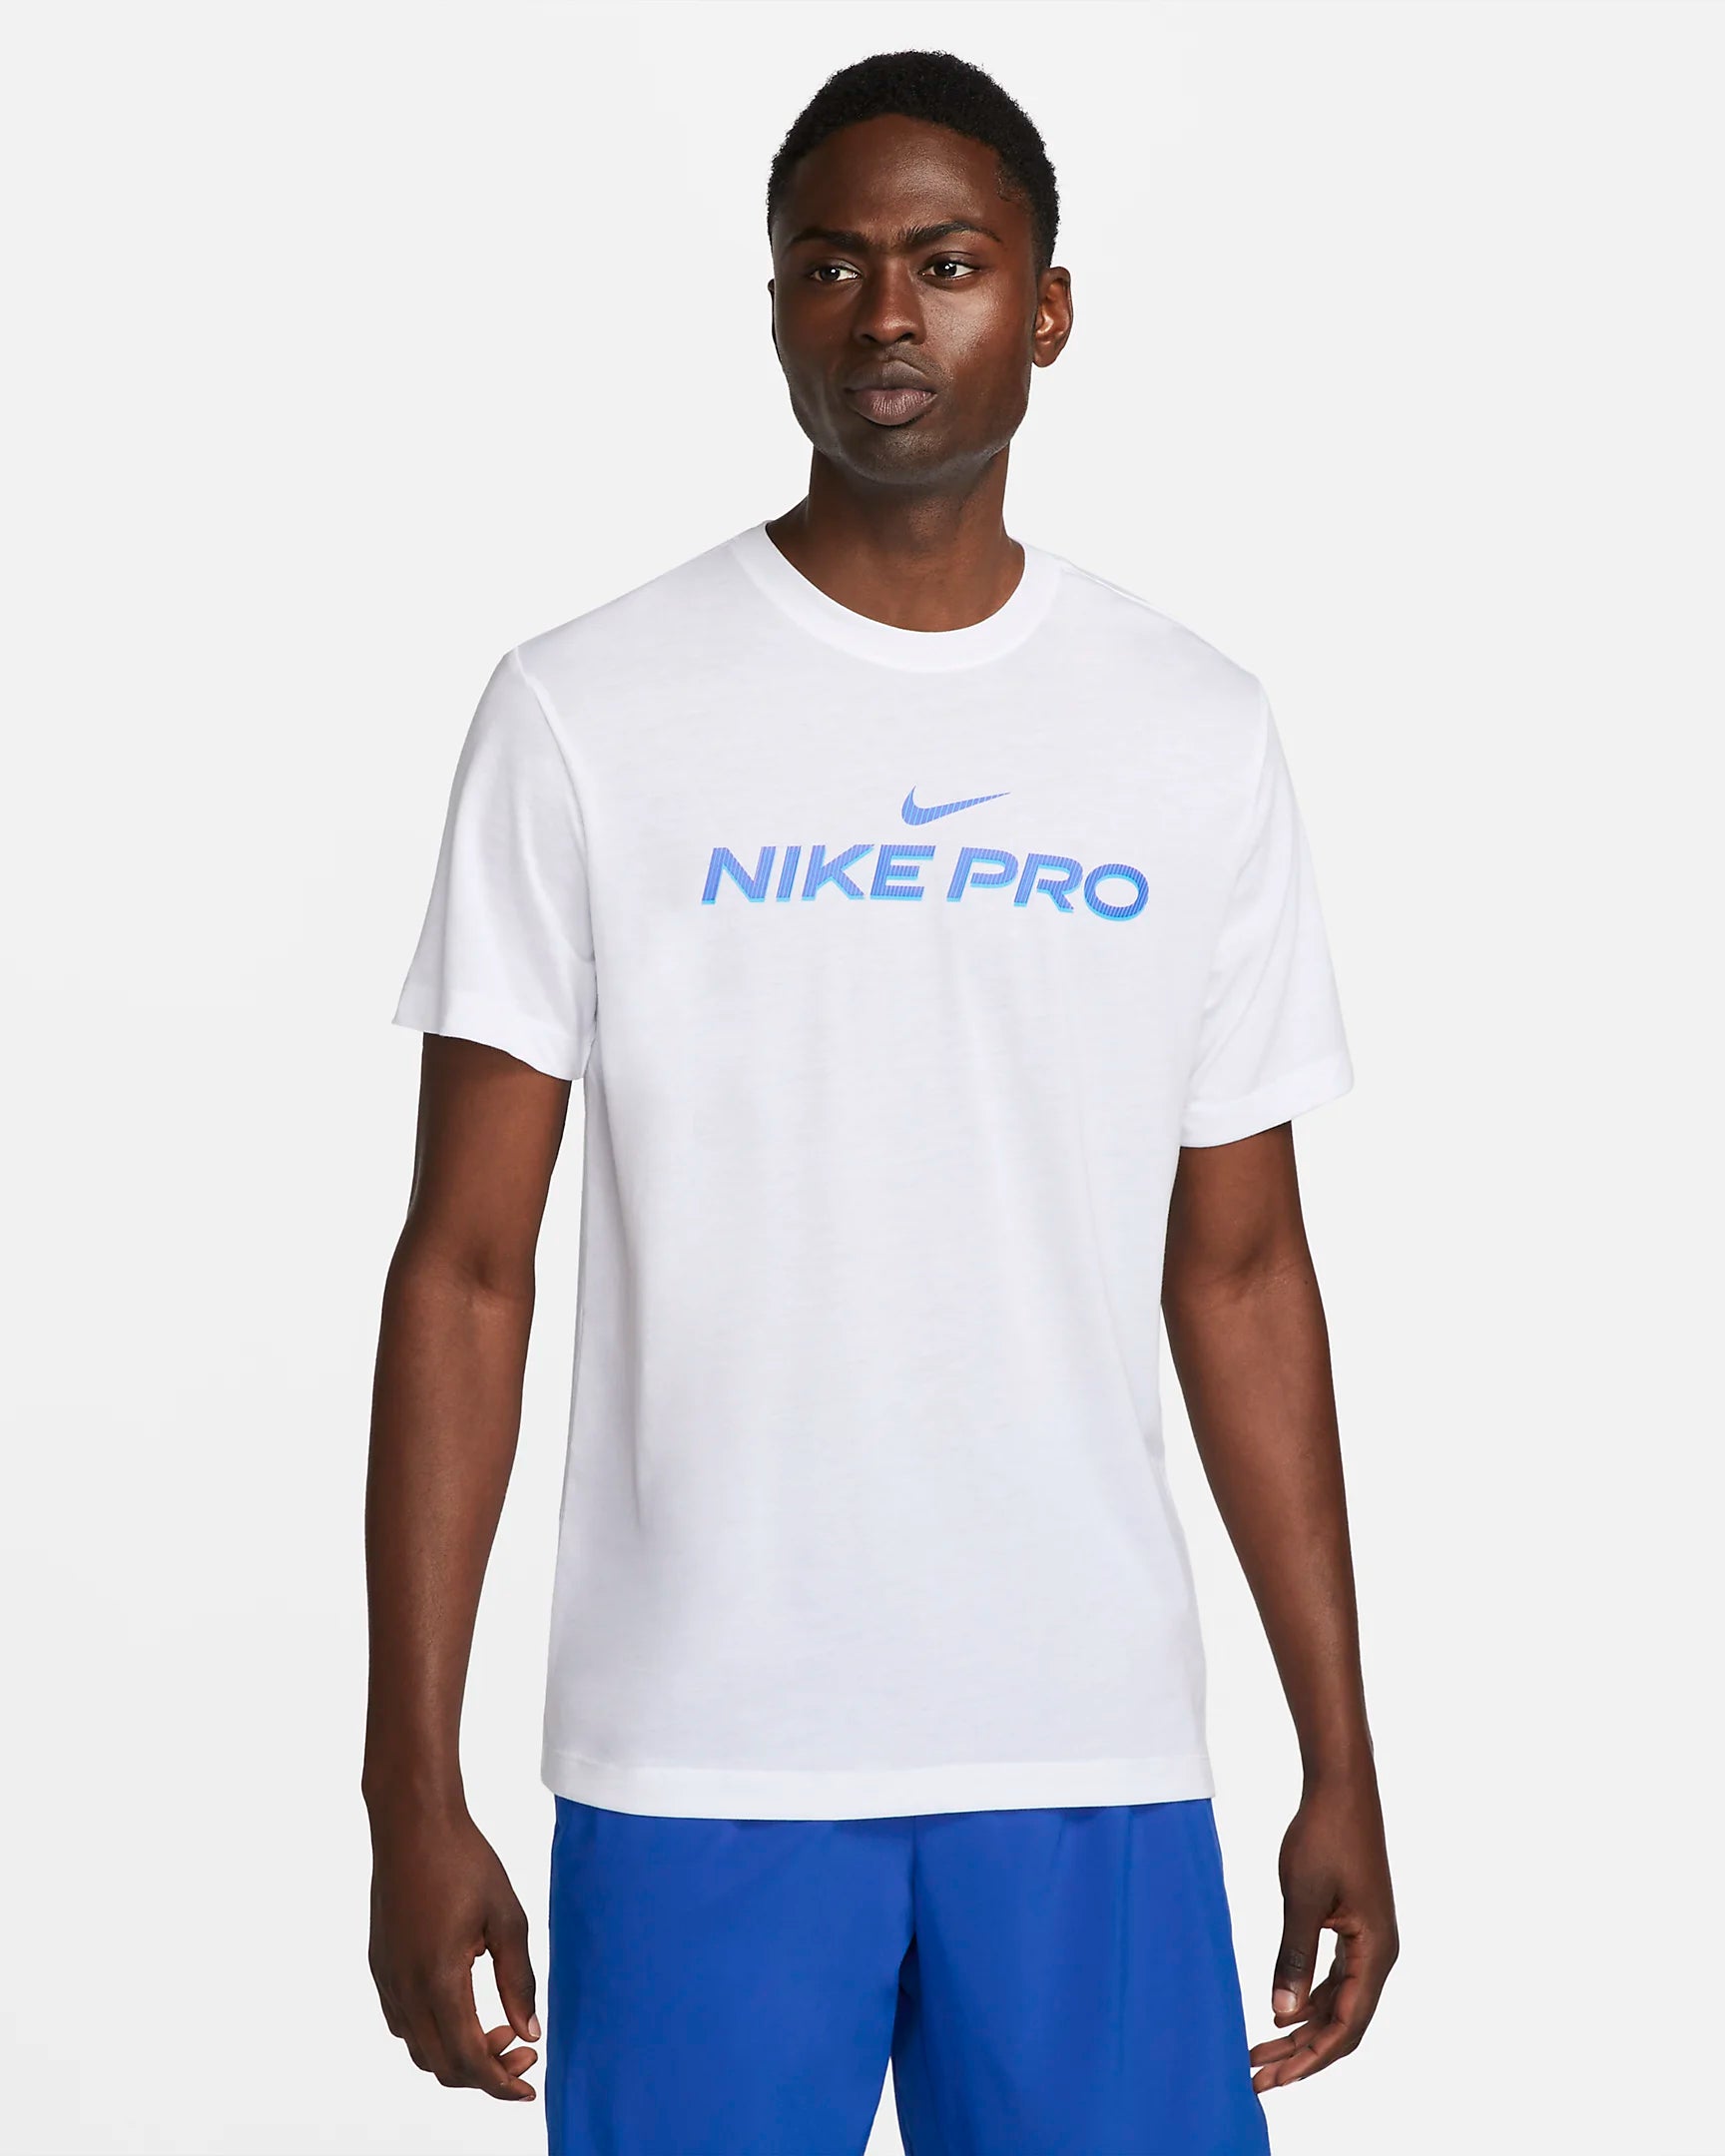 Nike Dri-Fit T-Shirt - White/Blue